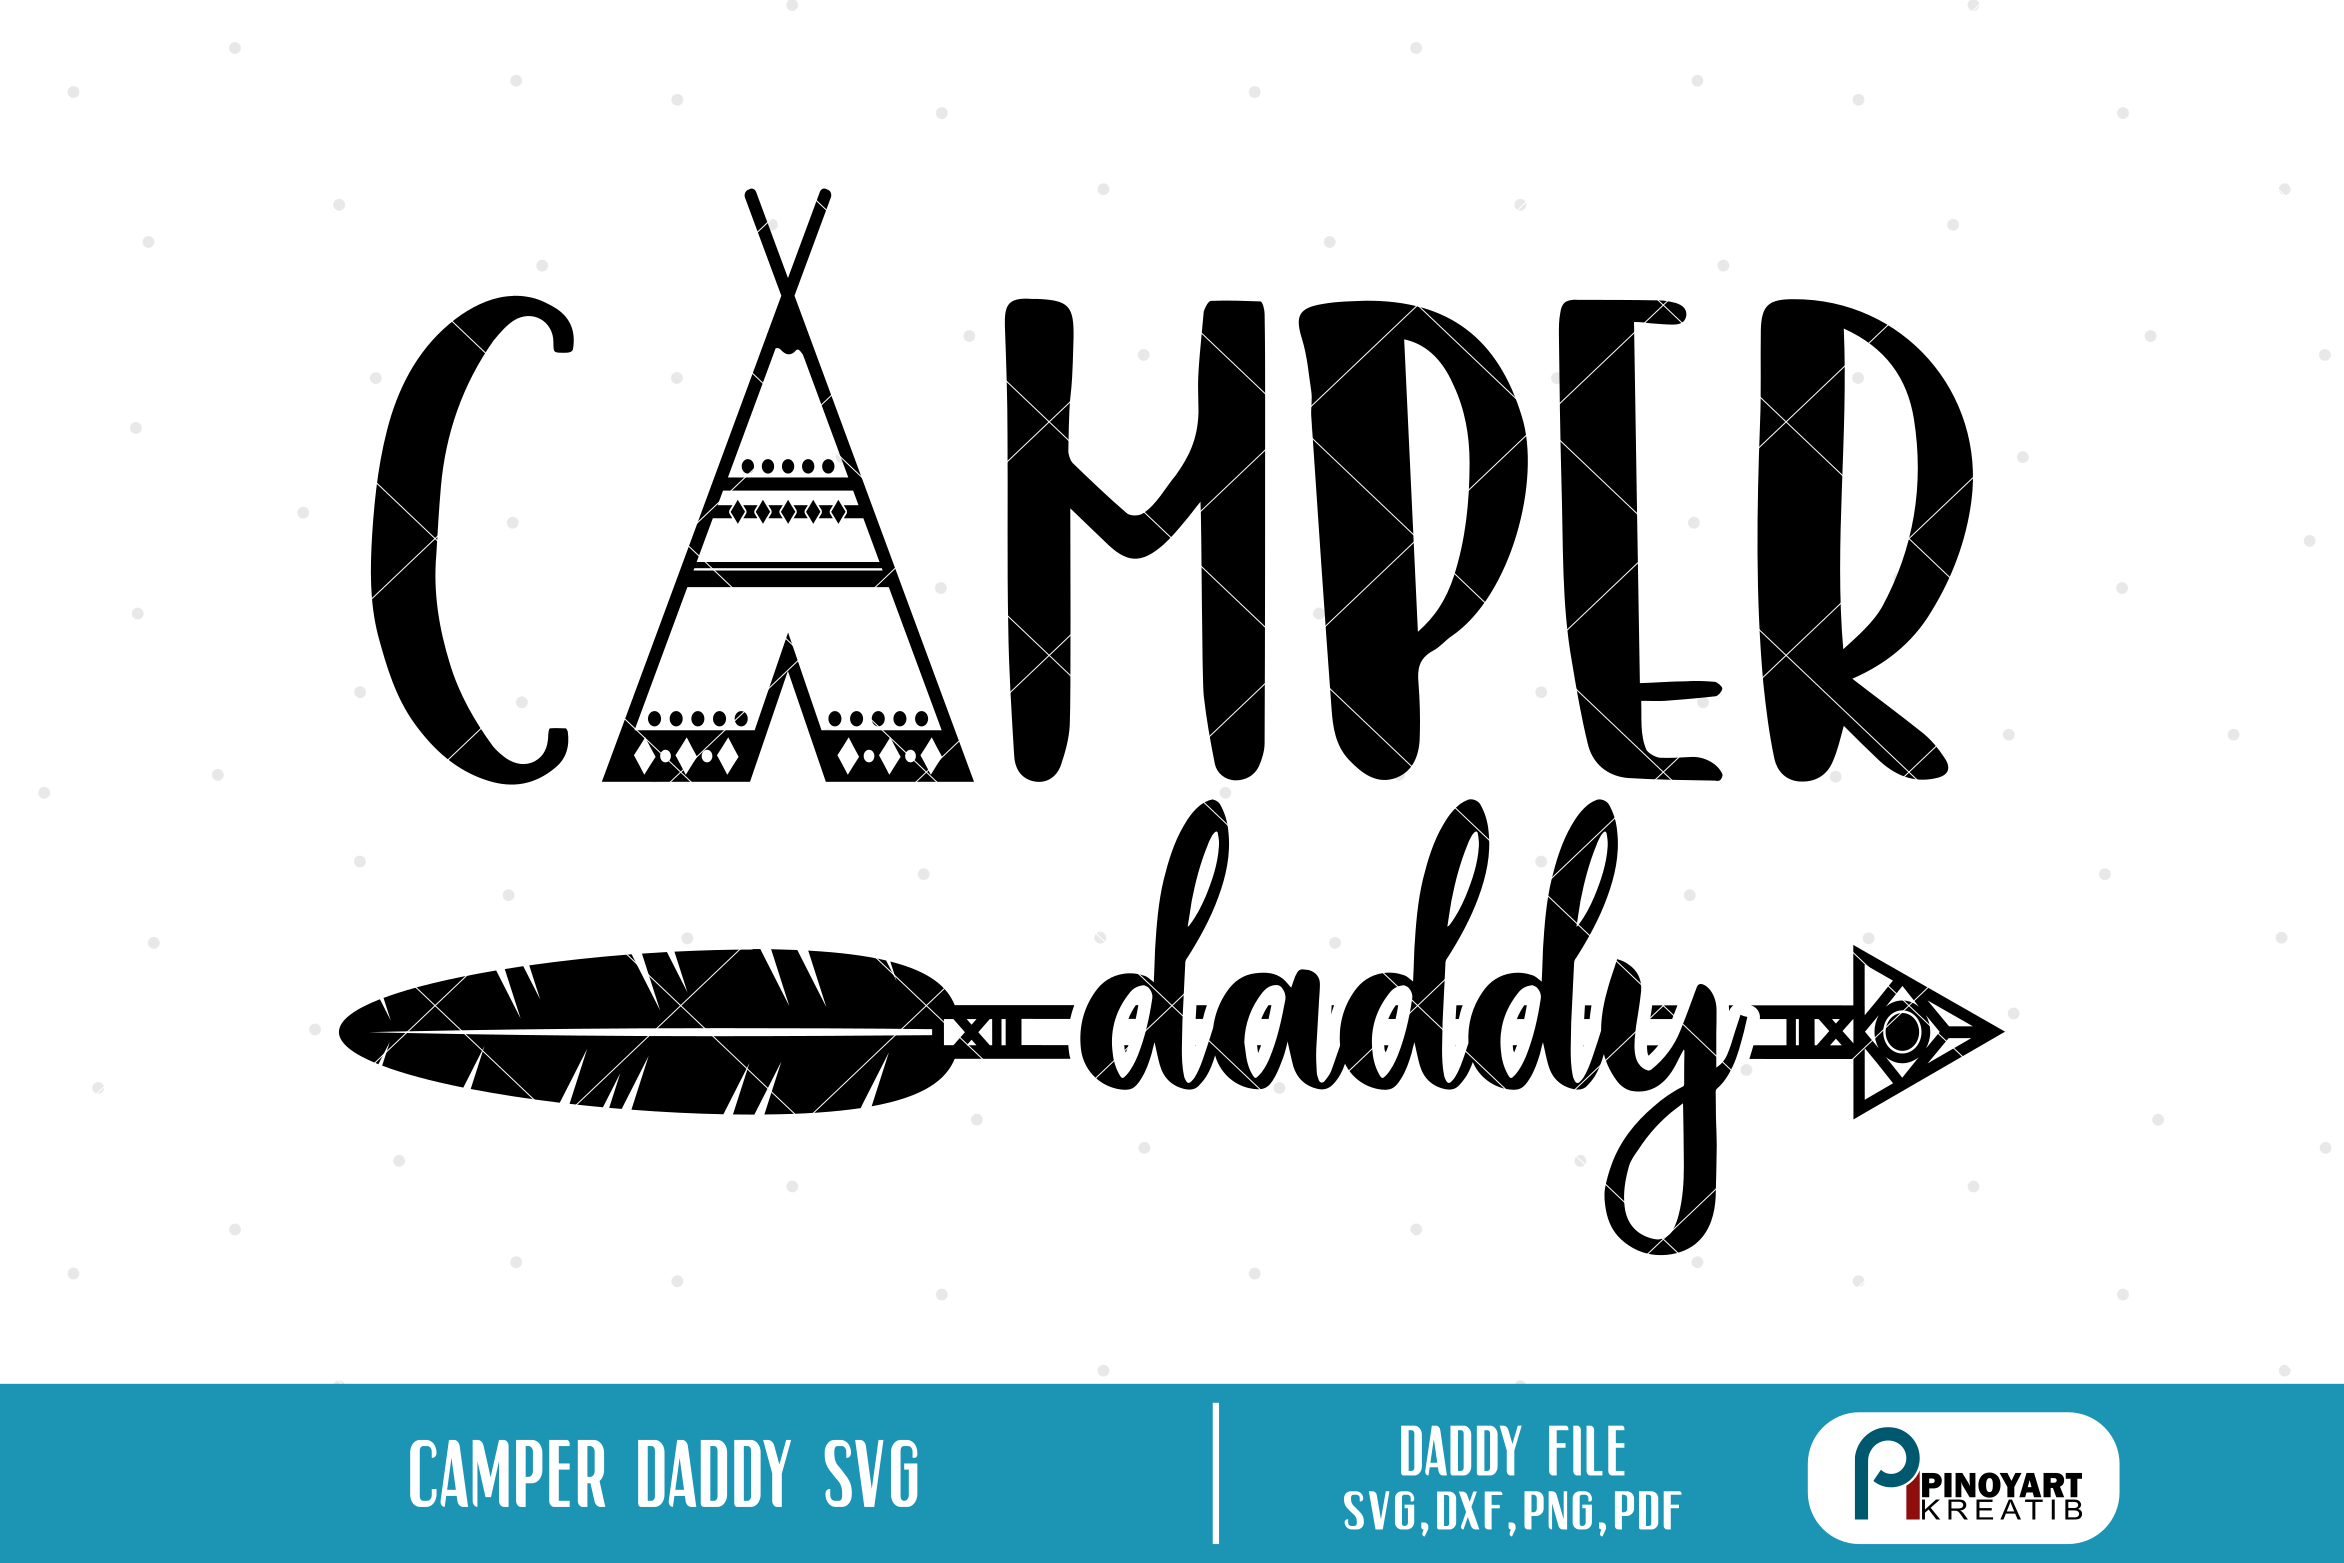 Download camper daddy svg,camper svg,camper svg file,camping svg ...